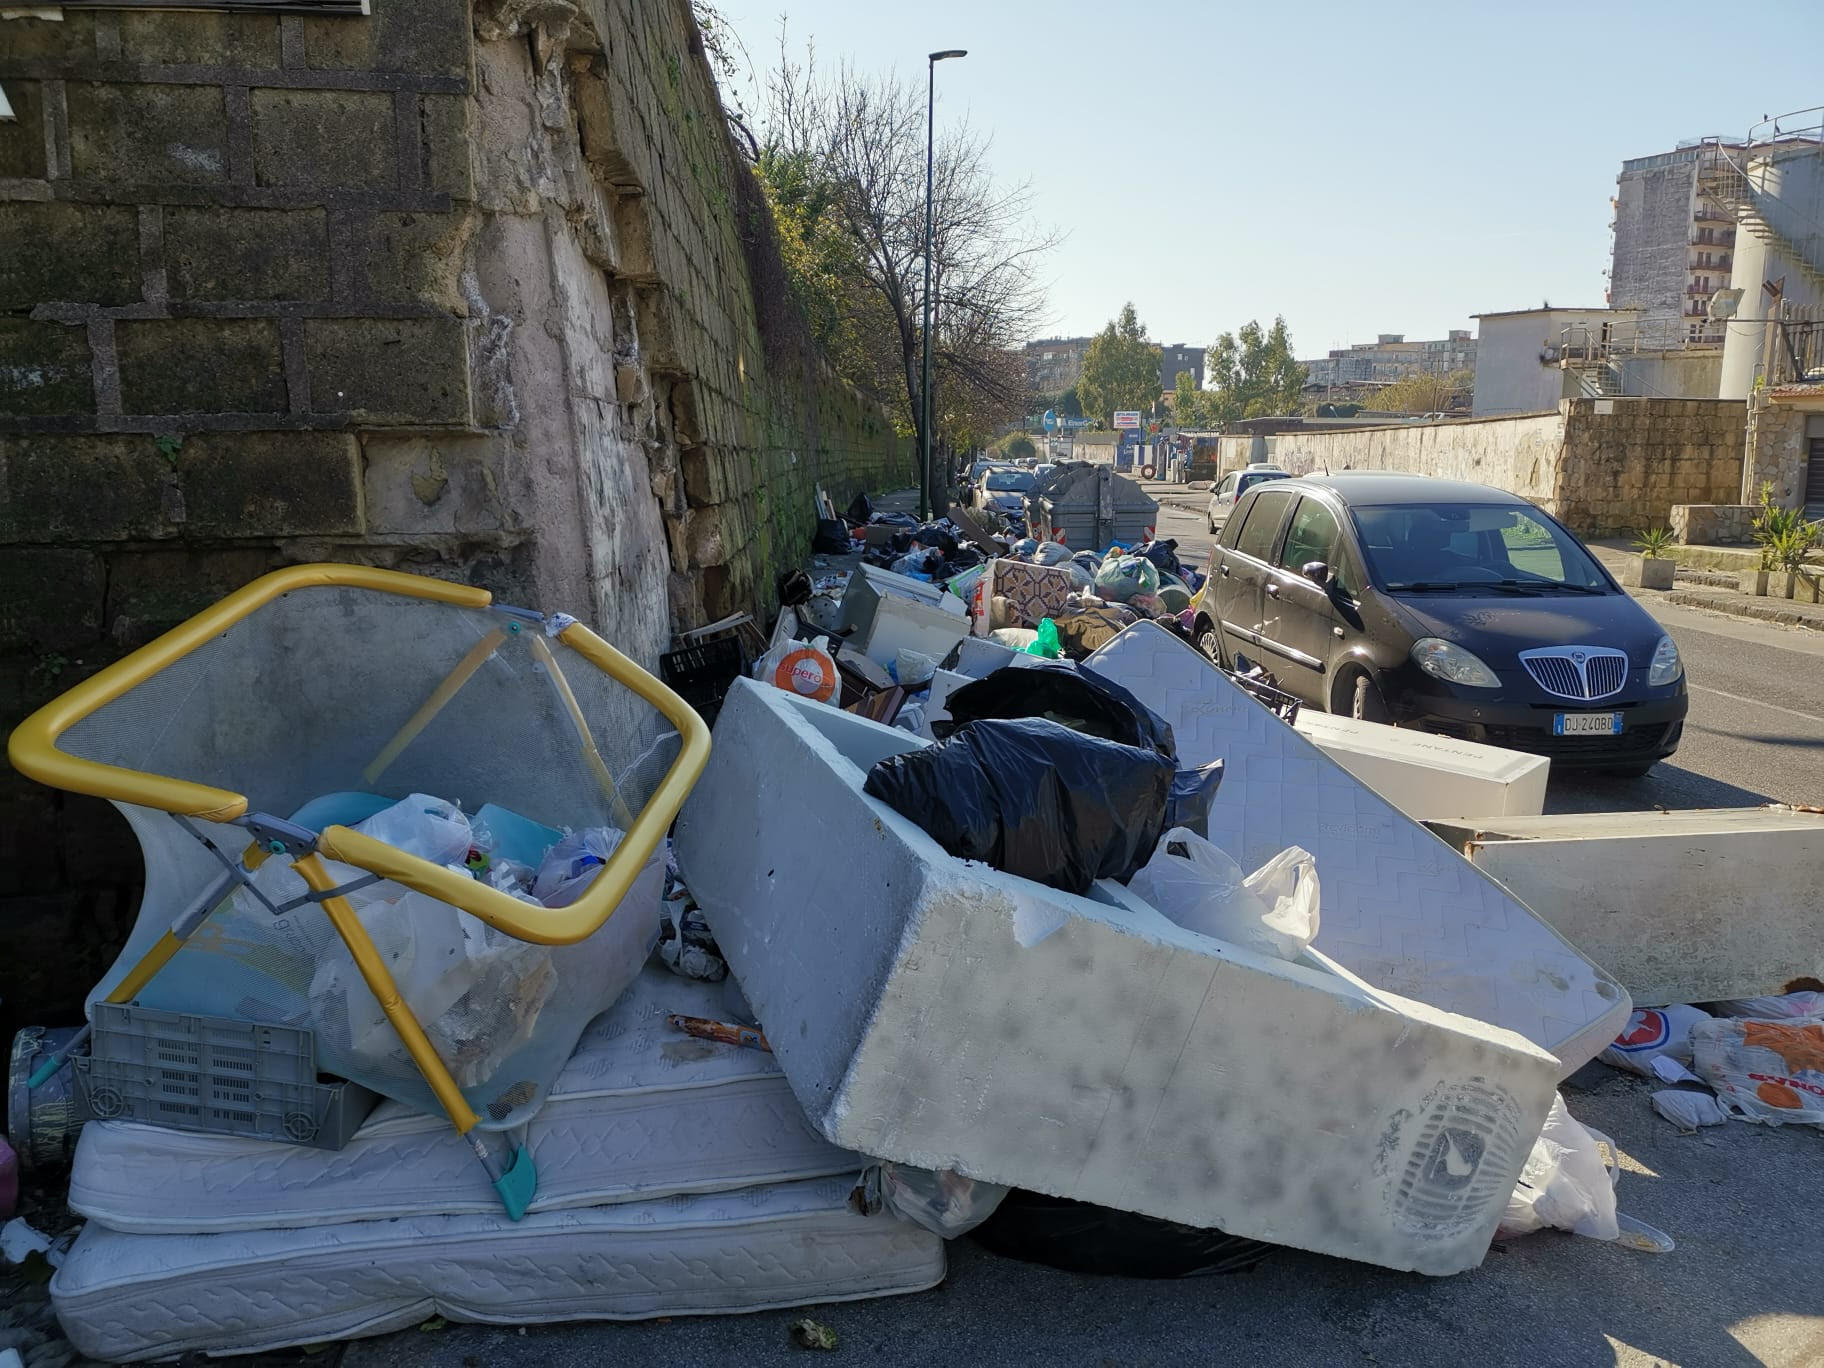 Napoli, il Capodanno lascia in eredità un territorio ricolmo di rifiuti